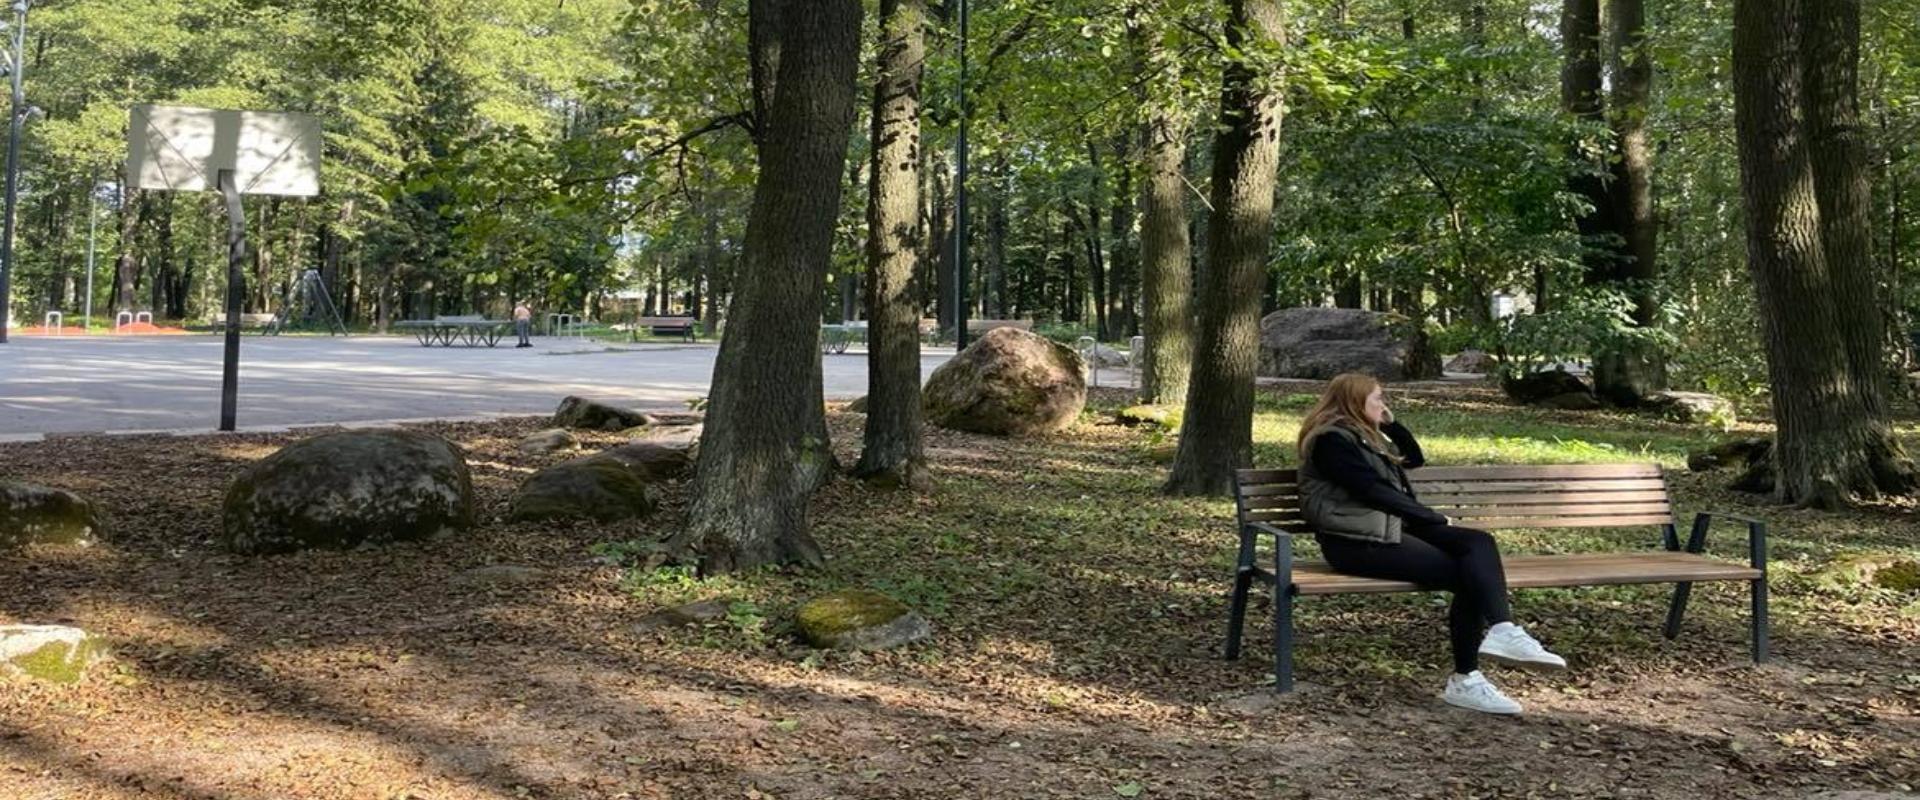 Der Kase-Park im Tallinner Stadtteil Kopli